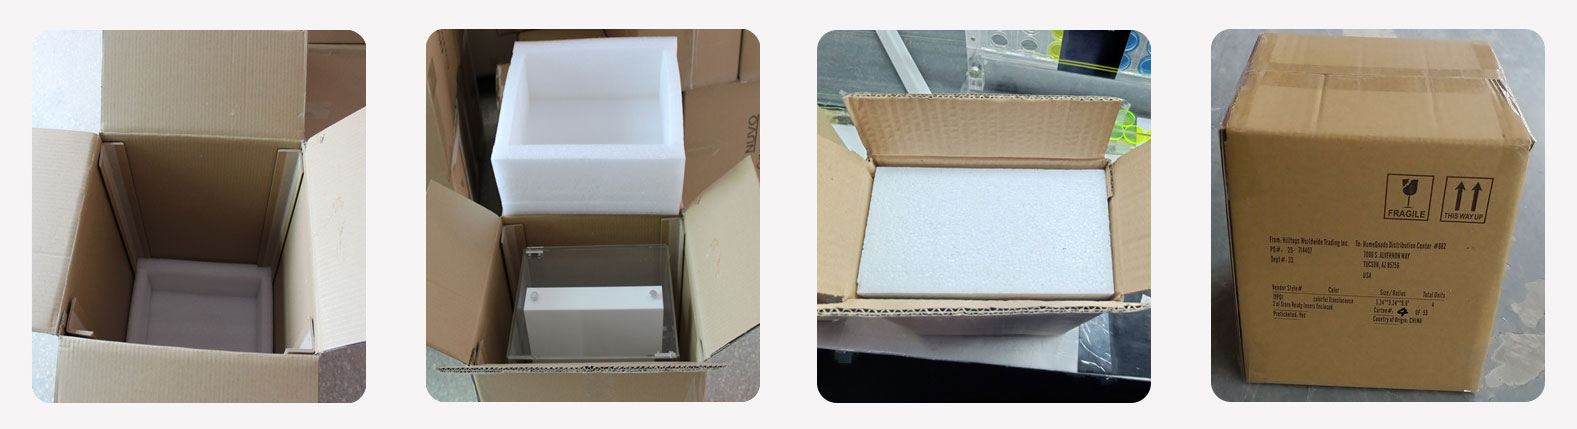 ऐक्रेलिक भंडारण बॉक्स पैकेजिंग